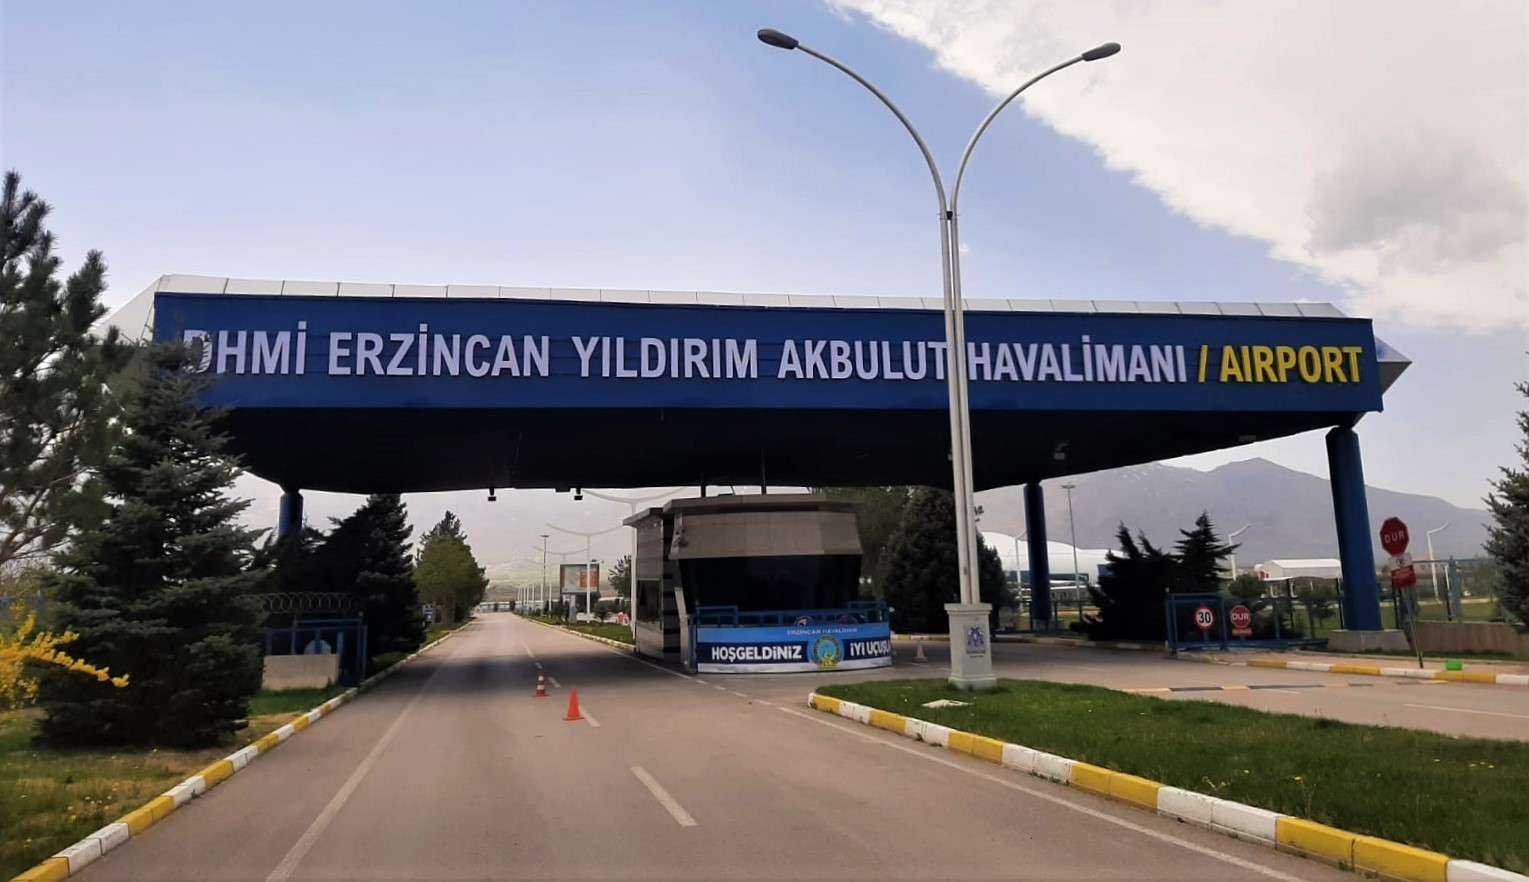 Erzincan Yıldırım Akbulut Havalimanı’ndan ocak ayında 16 bin 898 yolcu faydalandı #erzincan